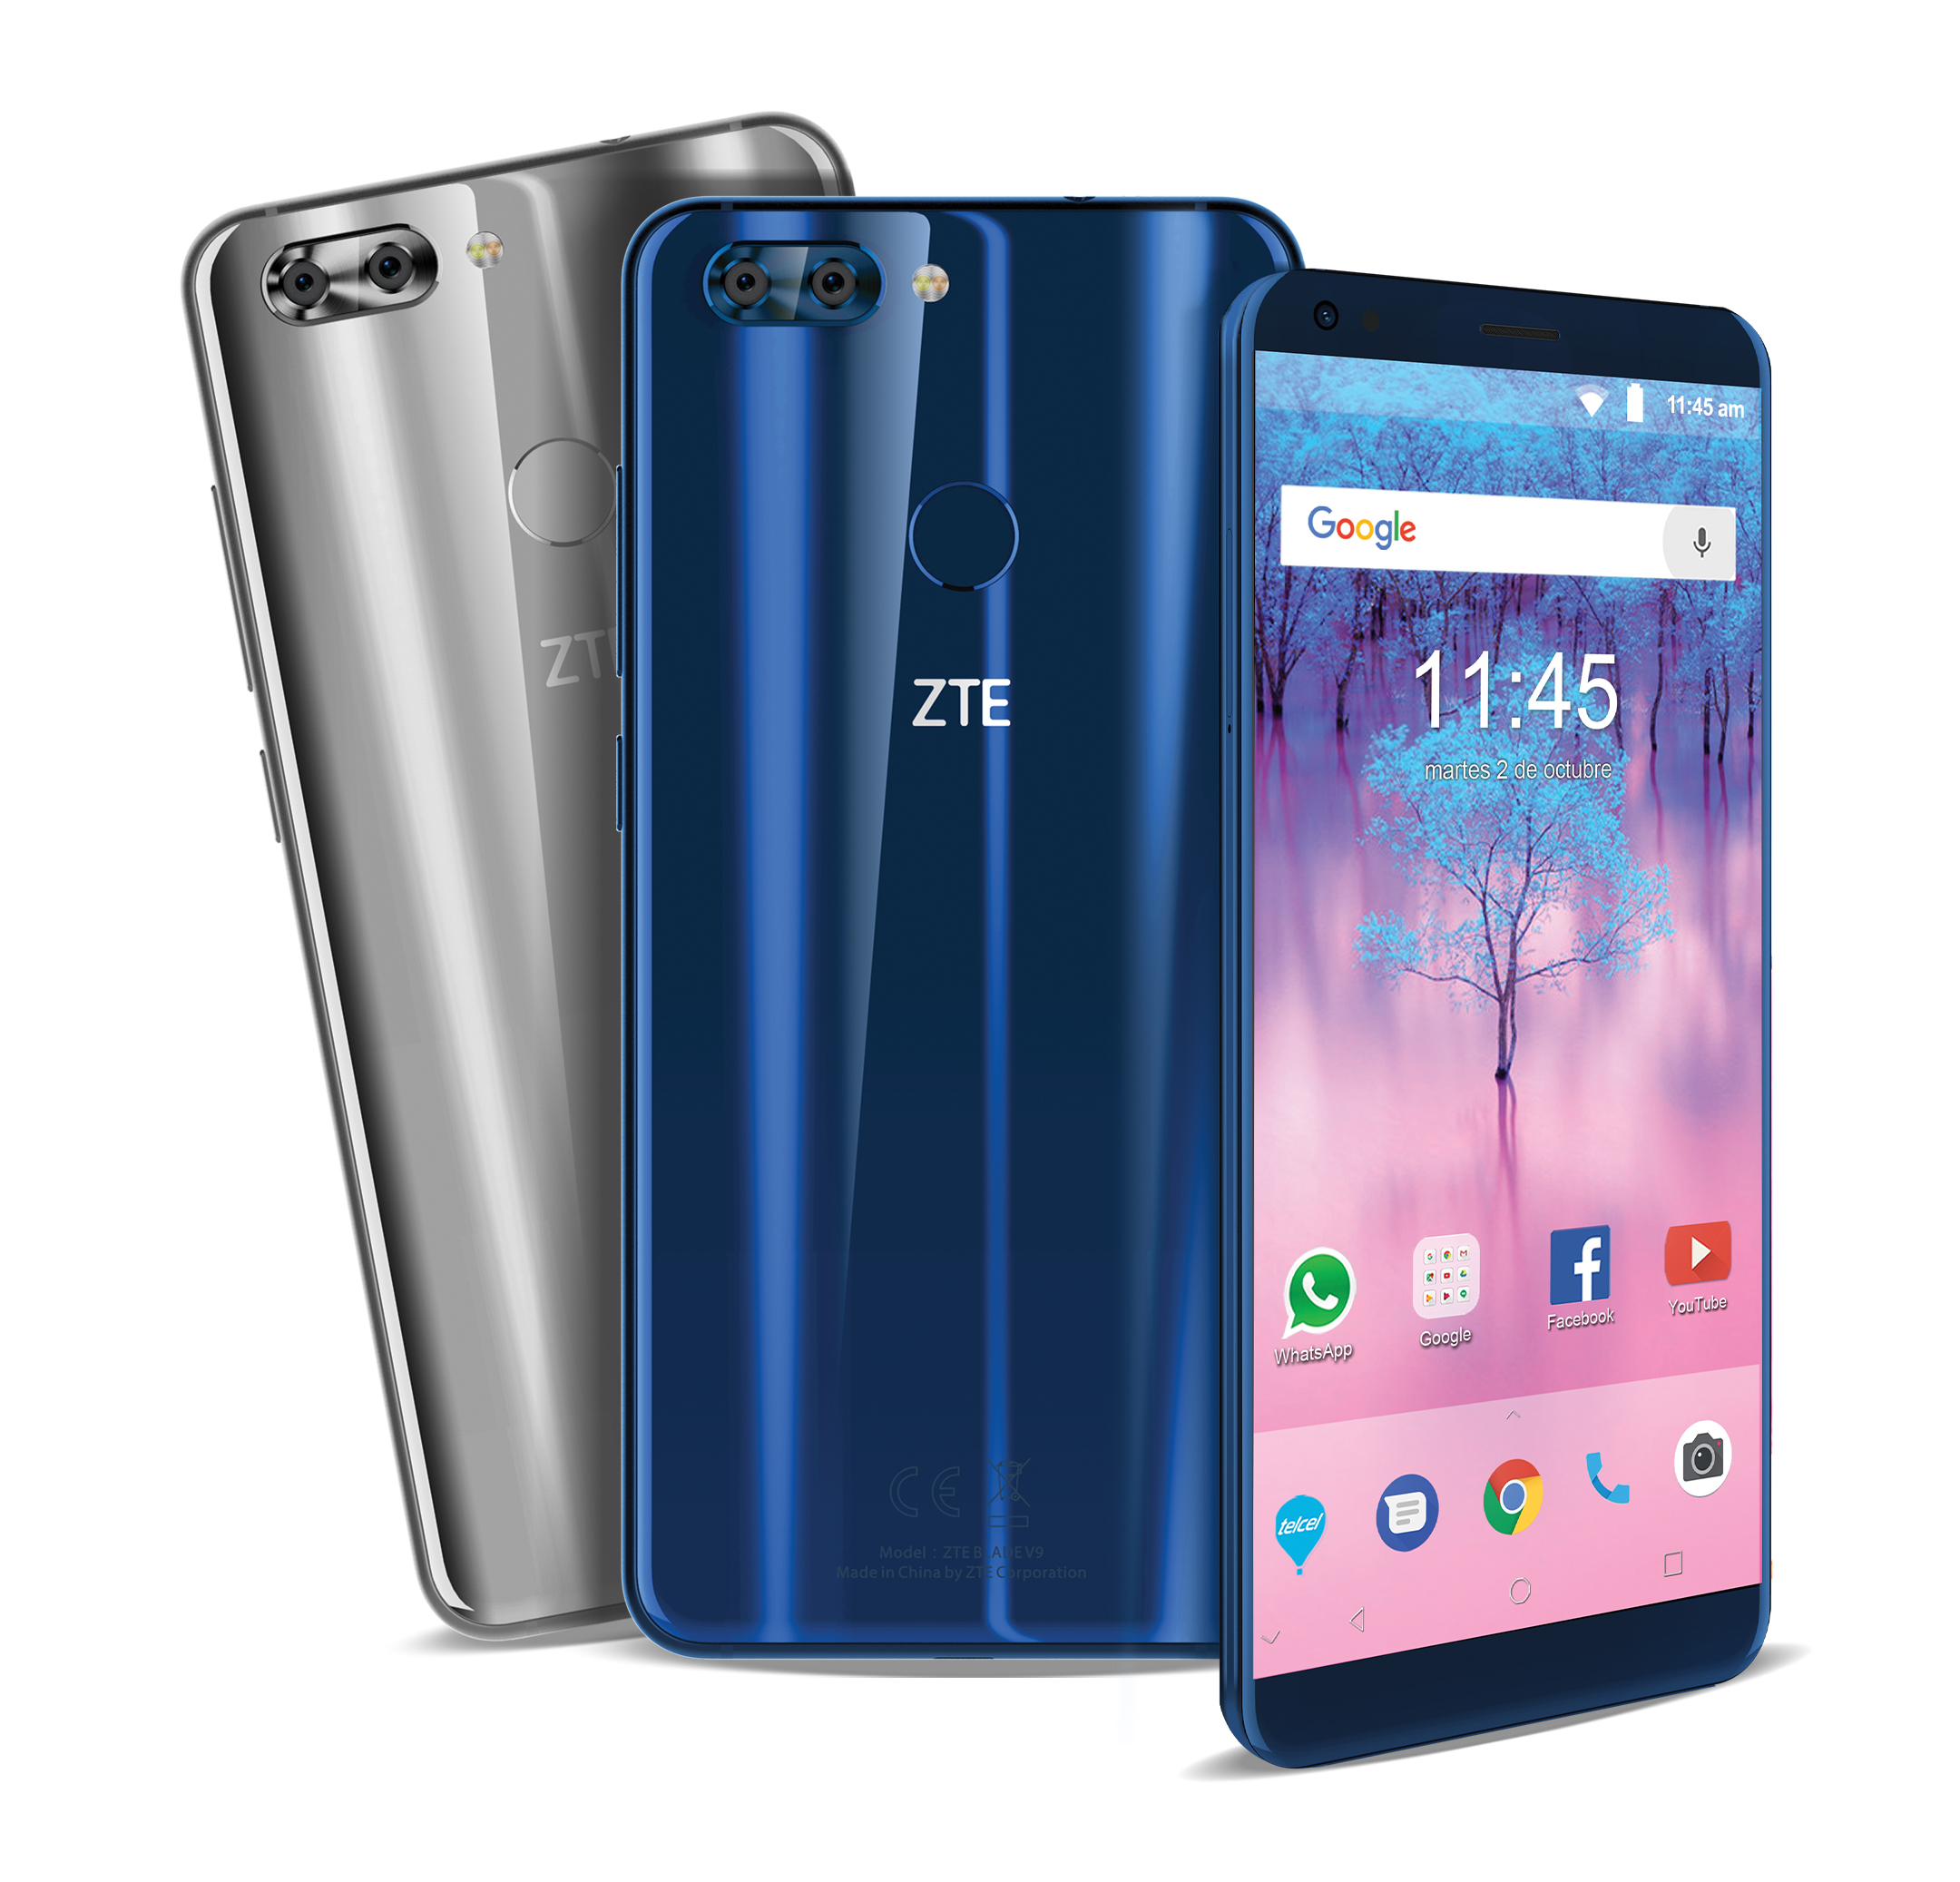 ZTE Blade V9 ahora disponible en capacidad de 32 GB